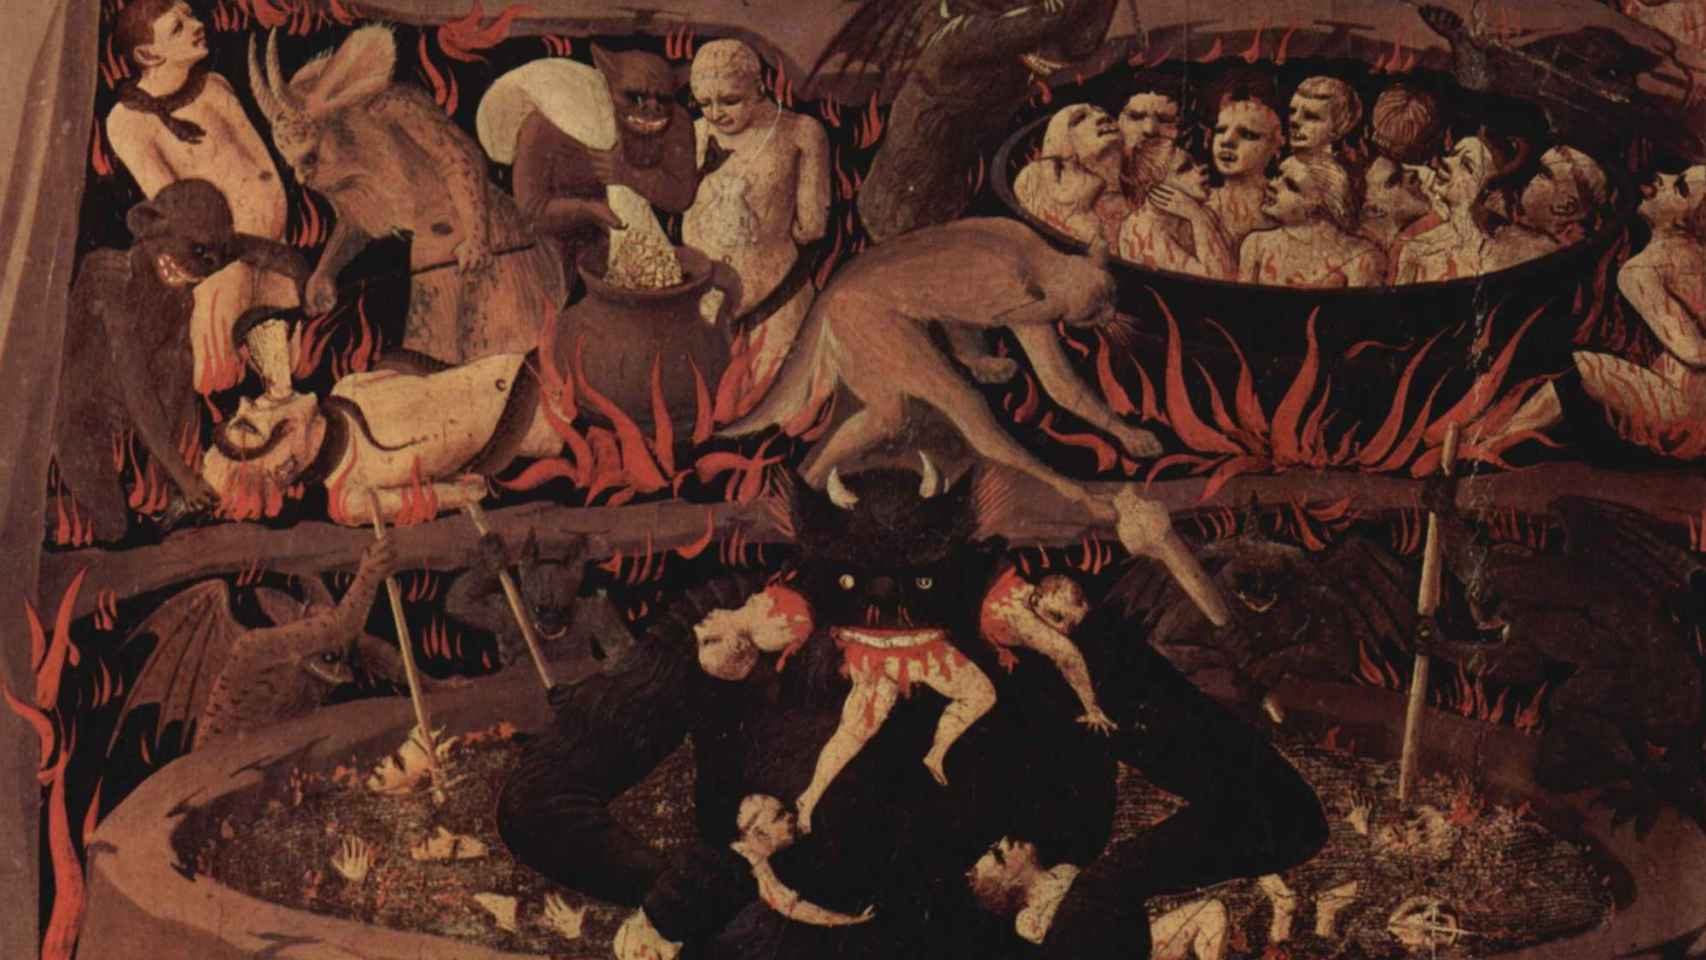 Detalle de el infierno en la obra 'El juicio final' de Fra Angelico (1431).